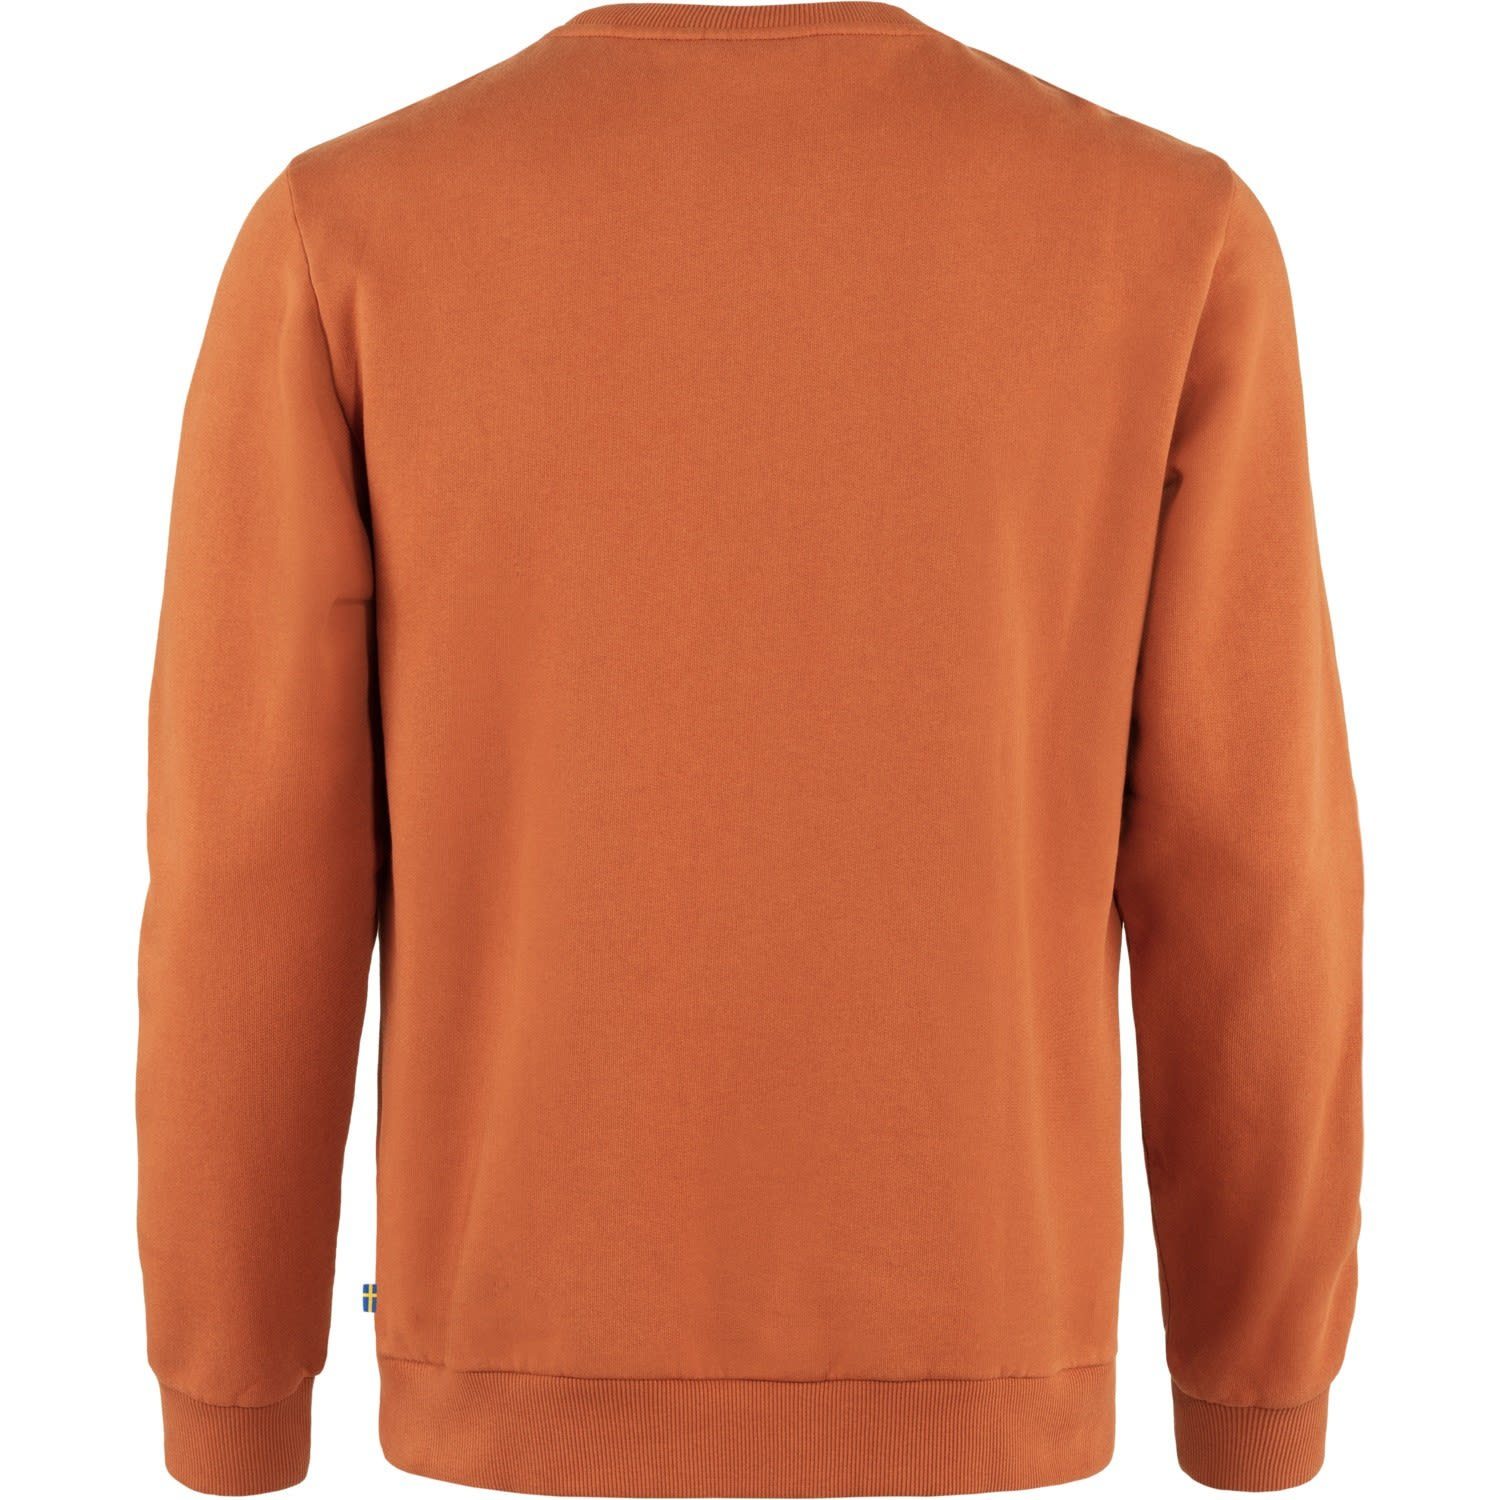 Herren Brown Fleecepullover Sweater Terracotta M Sweater Fjällräven Fjällräven Logo